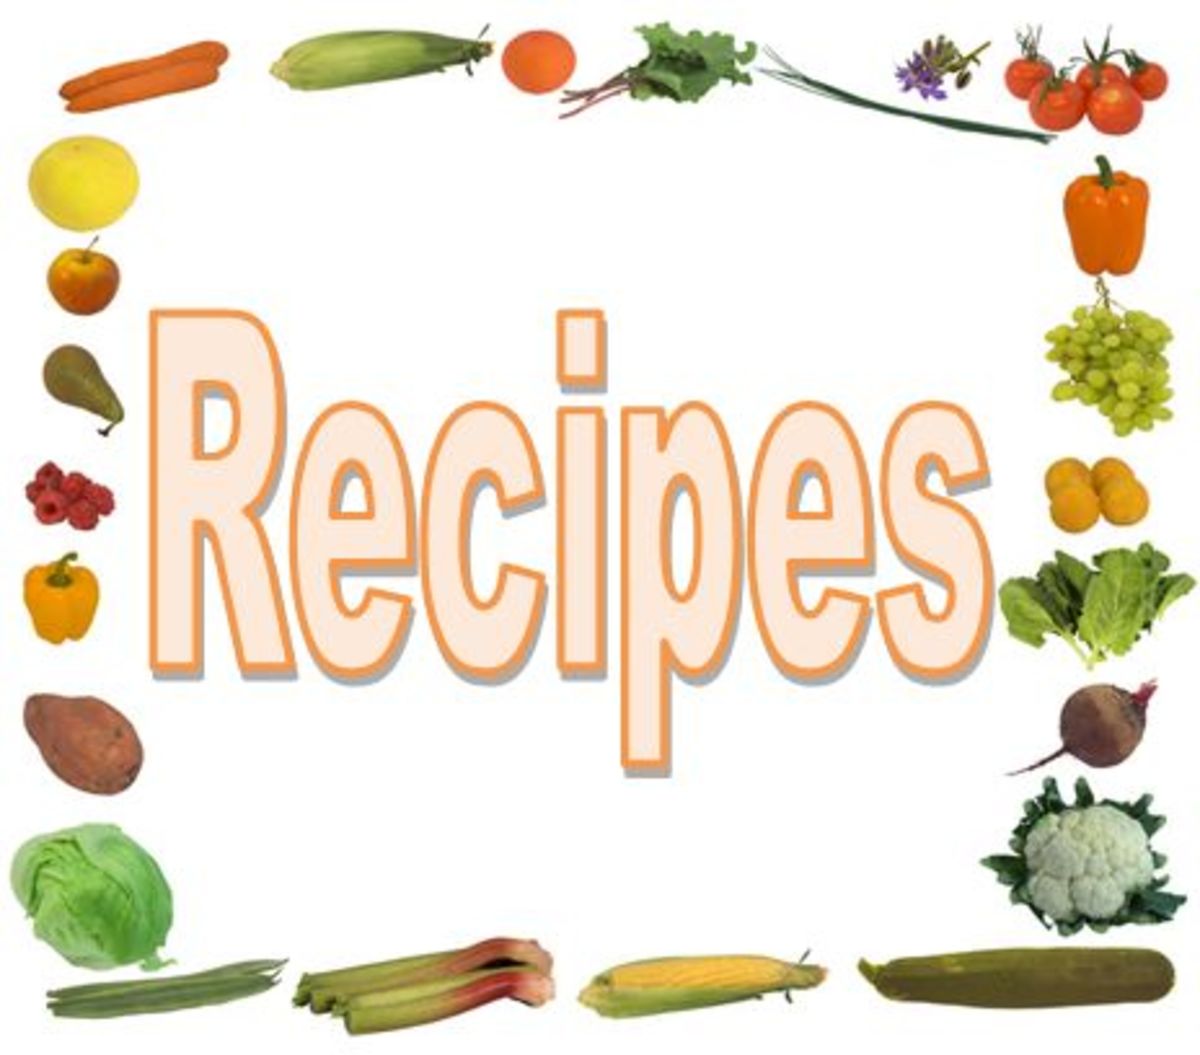 calcium rich vegetable recipes